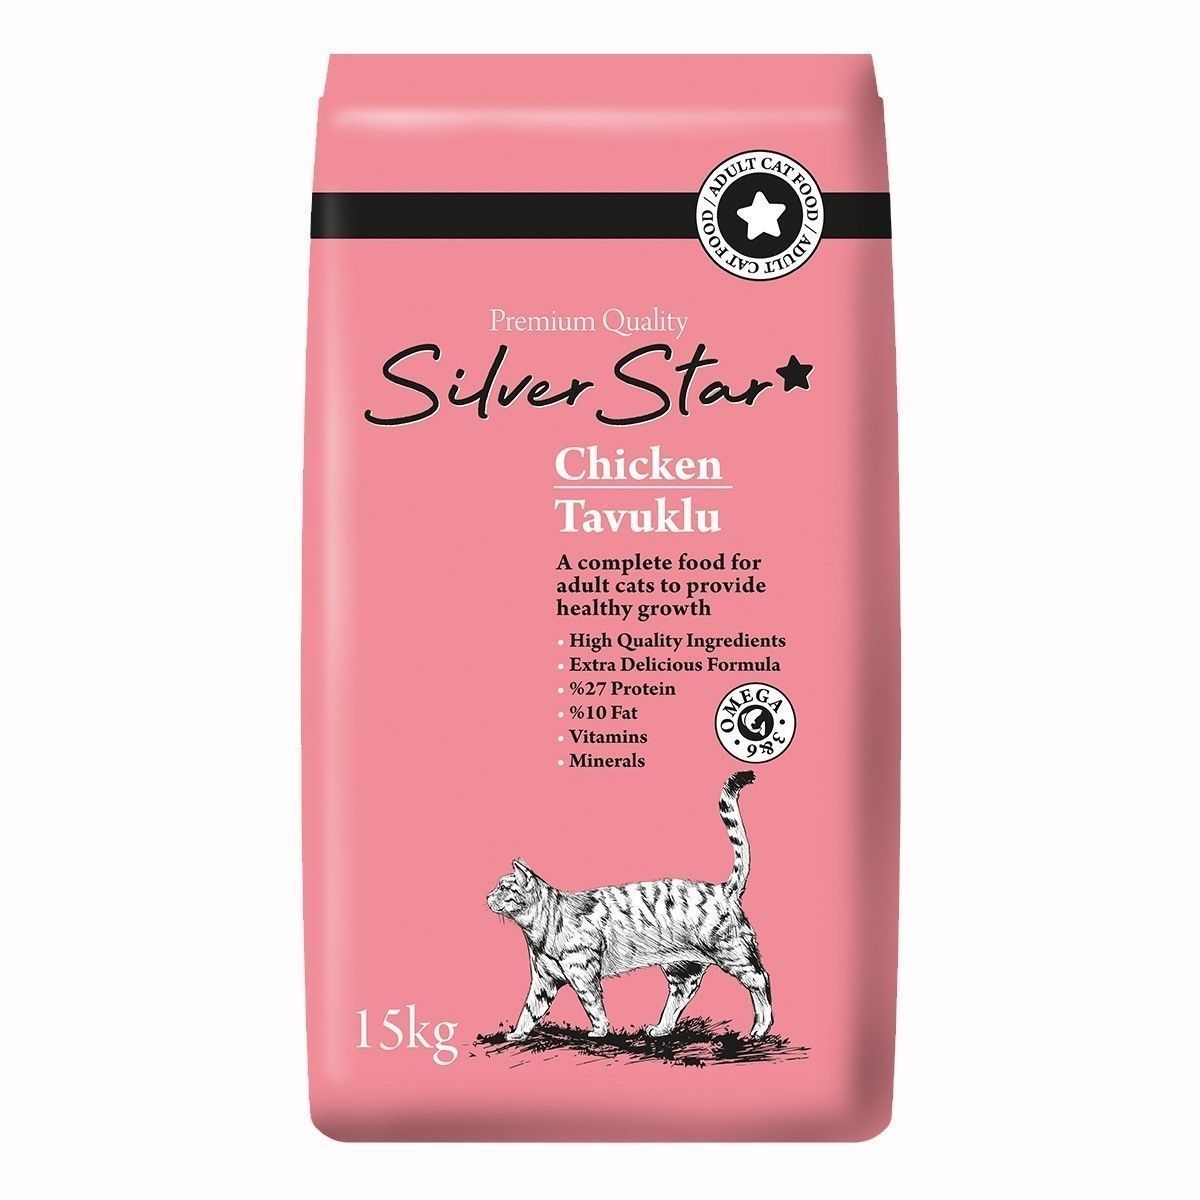 Yetişkin Kedi Mamaları | Silver Star Tavuklu Yetişkin Kedi Maması 15 Kg | silverstar tavuk | 